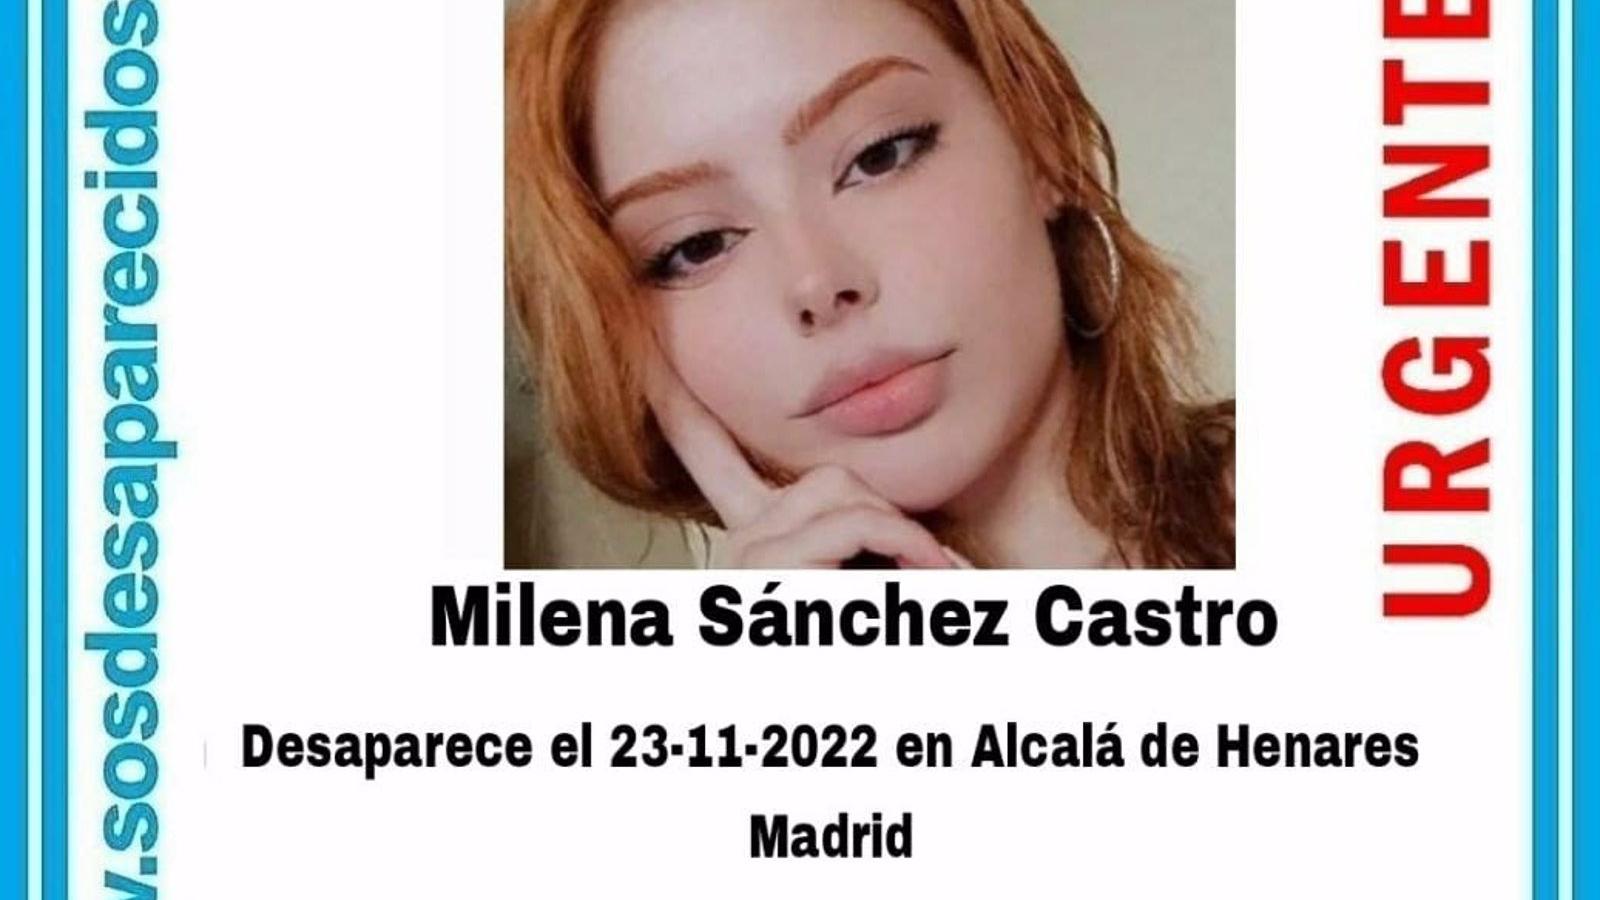 Hallan muerta en un piso de Madrid a la joven de 20 años vecina de Alcalá que desapareció hace unos días